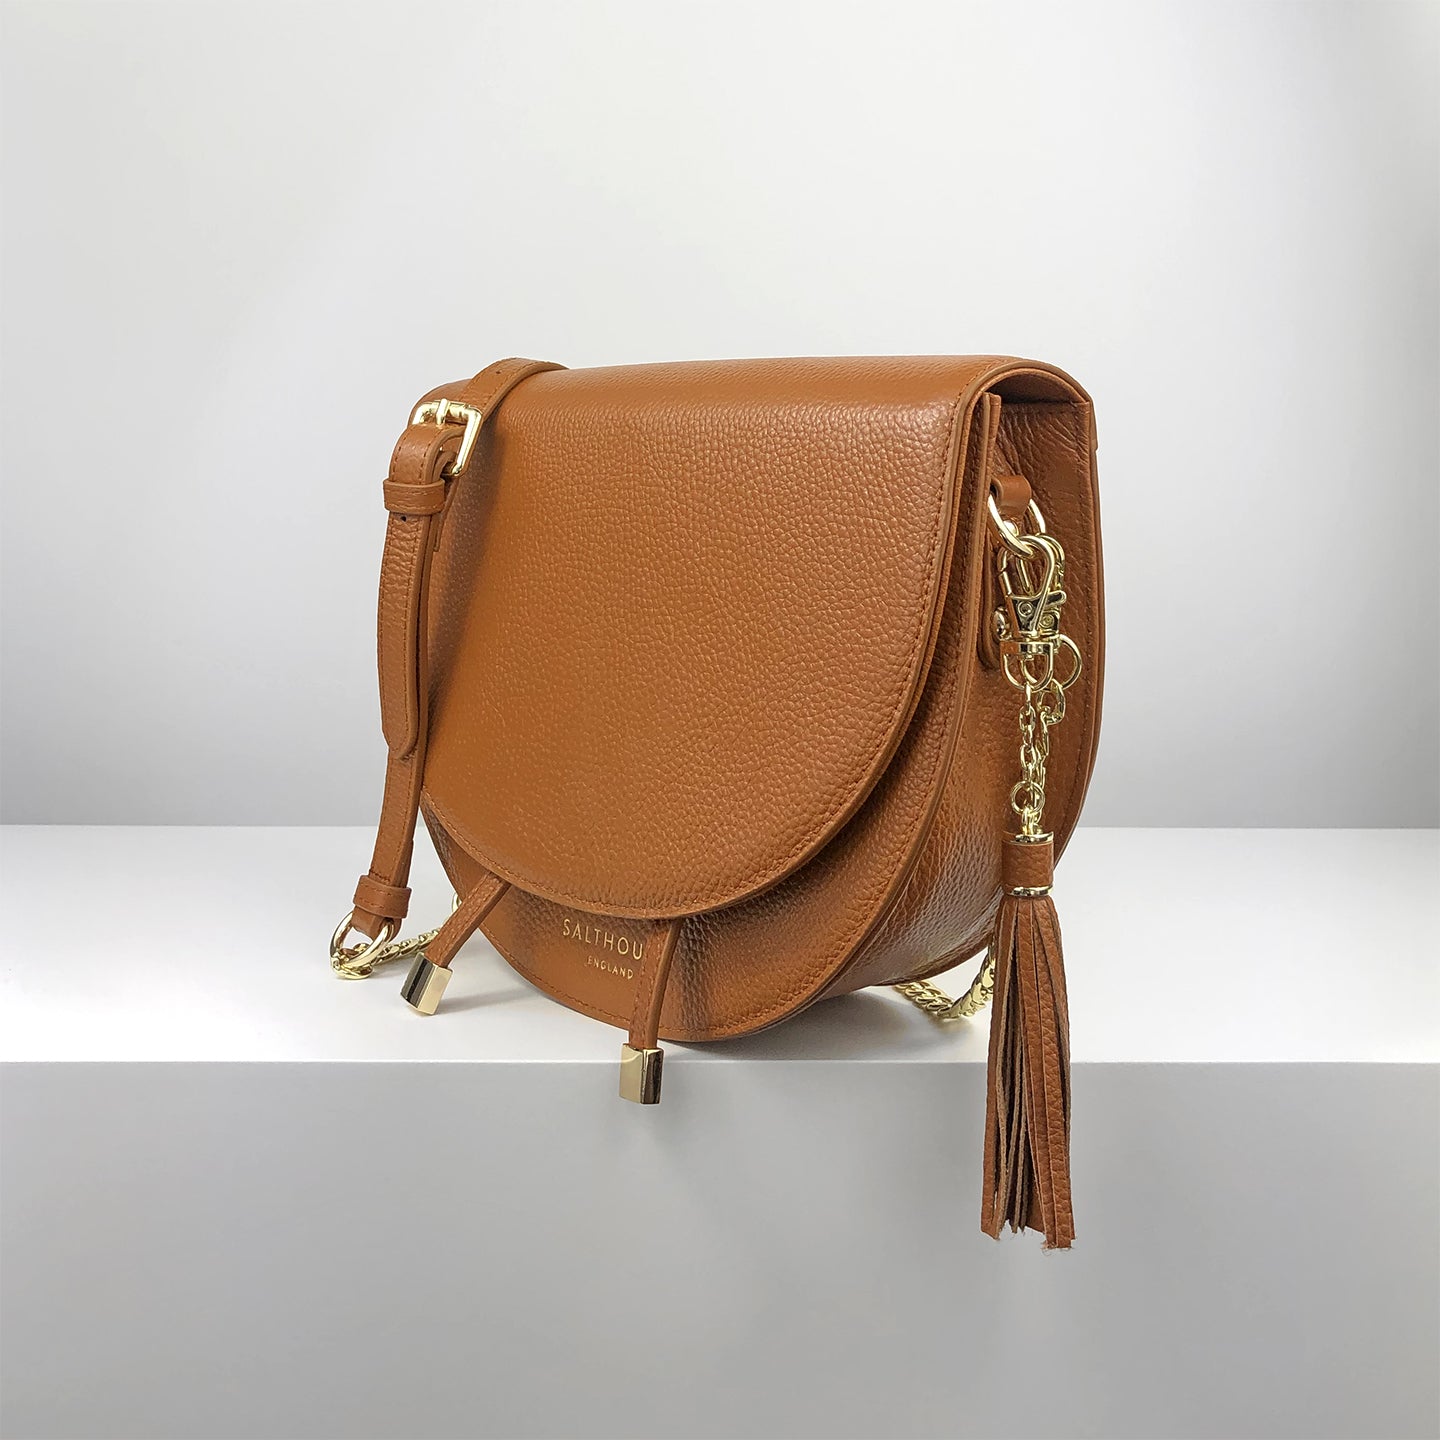 Floriana Grande Saddle Bag - Tan